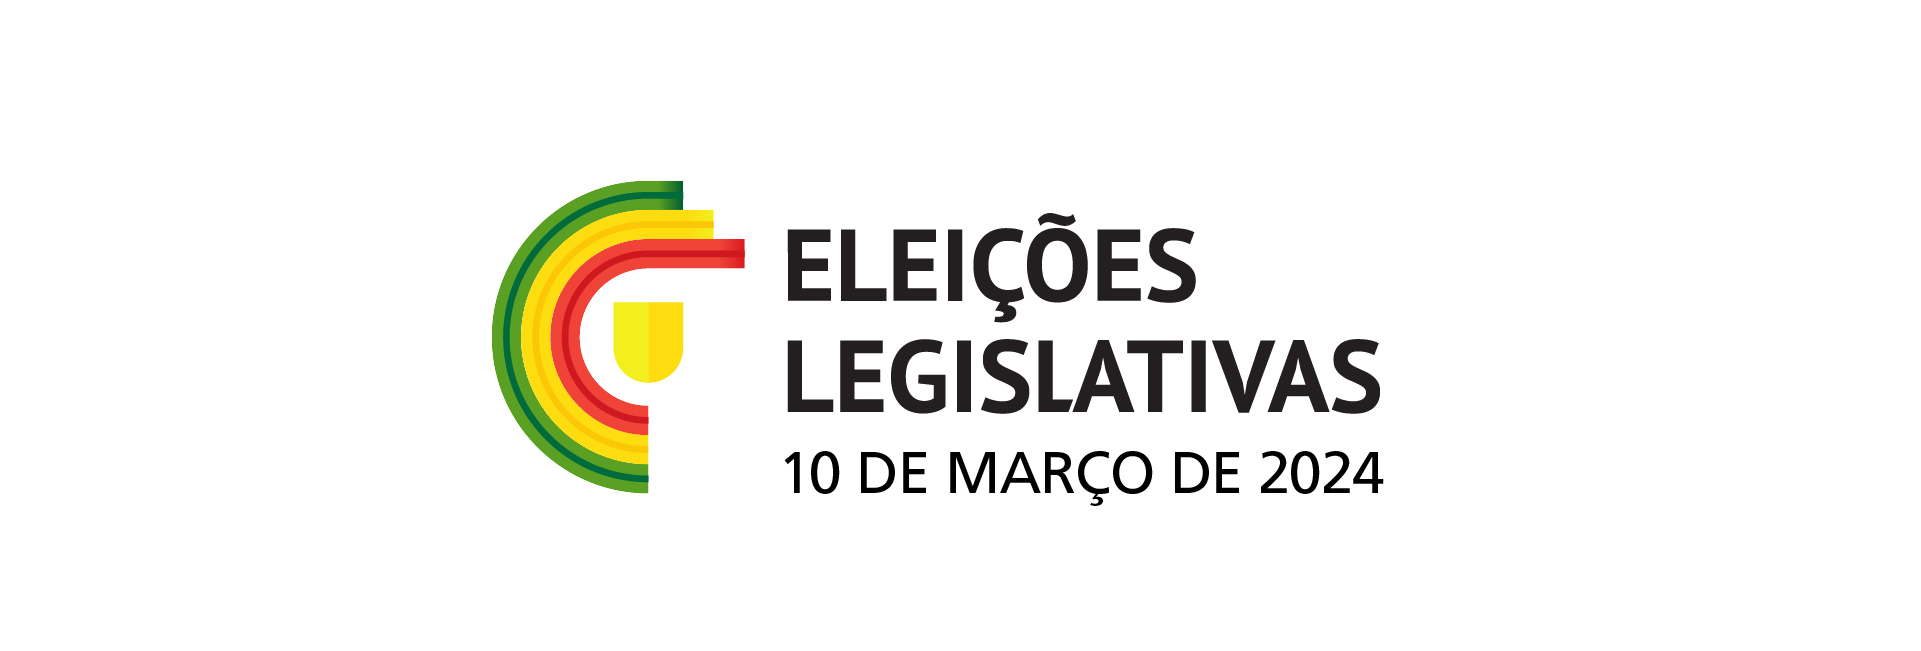 Eleições Legislativas 2024 – 10 de março de 2024